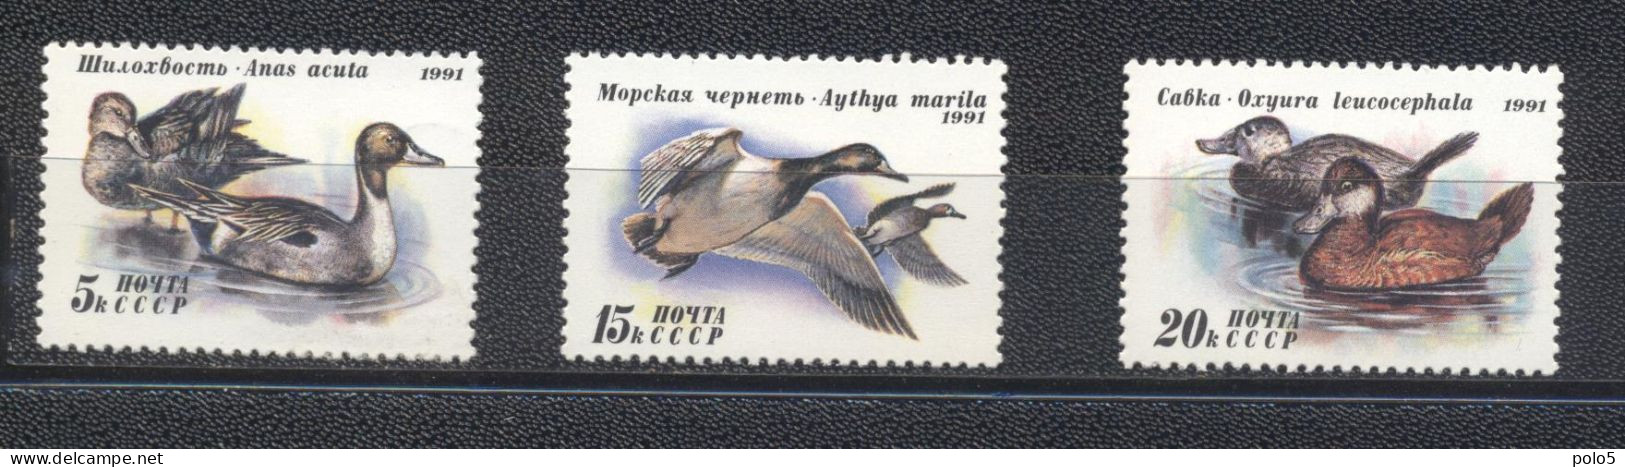 URSS 1991-Ducks  Set (3v) - Neufs